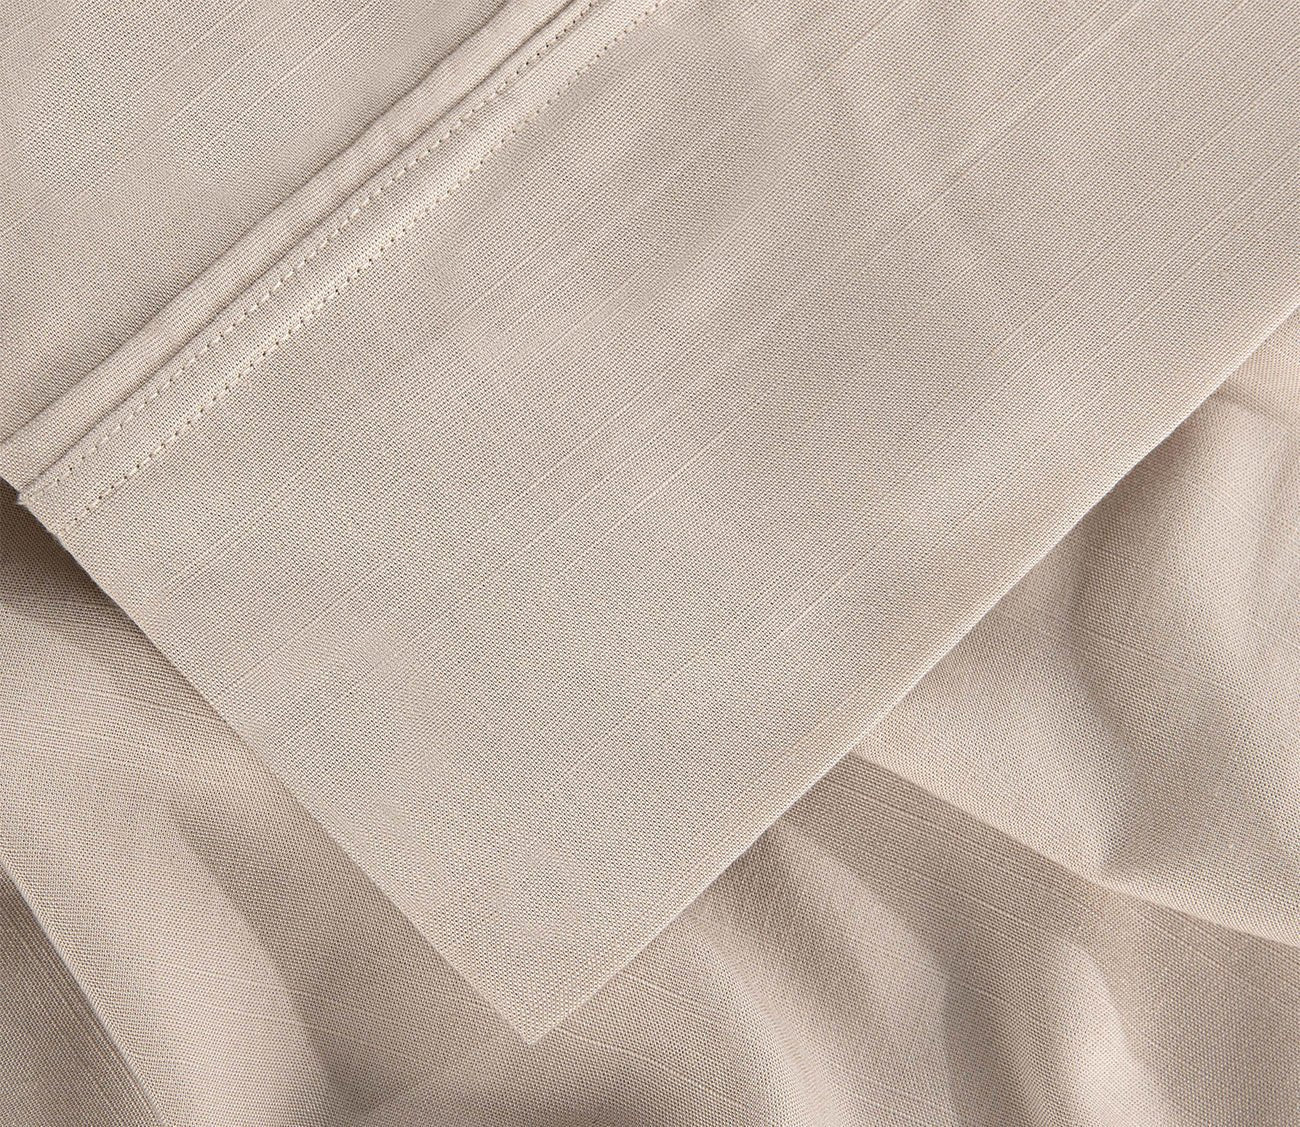 Hyper-Linen Sheet Set by Bedgear